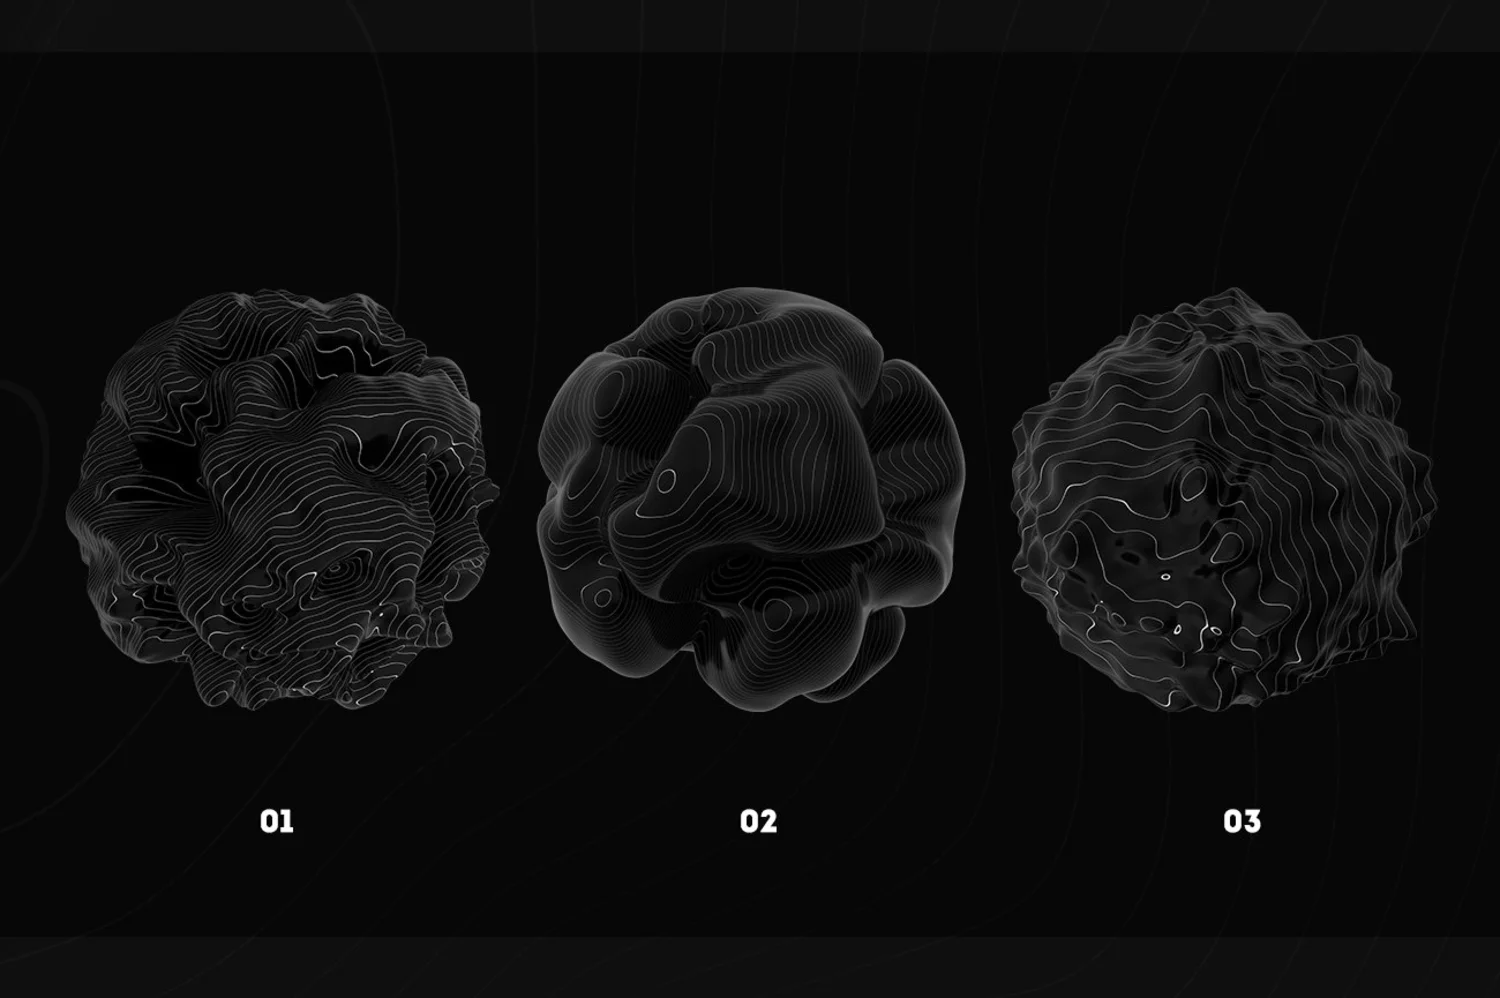 3496 12款艺术抽象3D立体几何扭曲未来科幻背景底纹png免抠图片国外设计素材 Abstract 3D Shapes